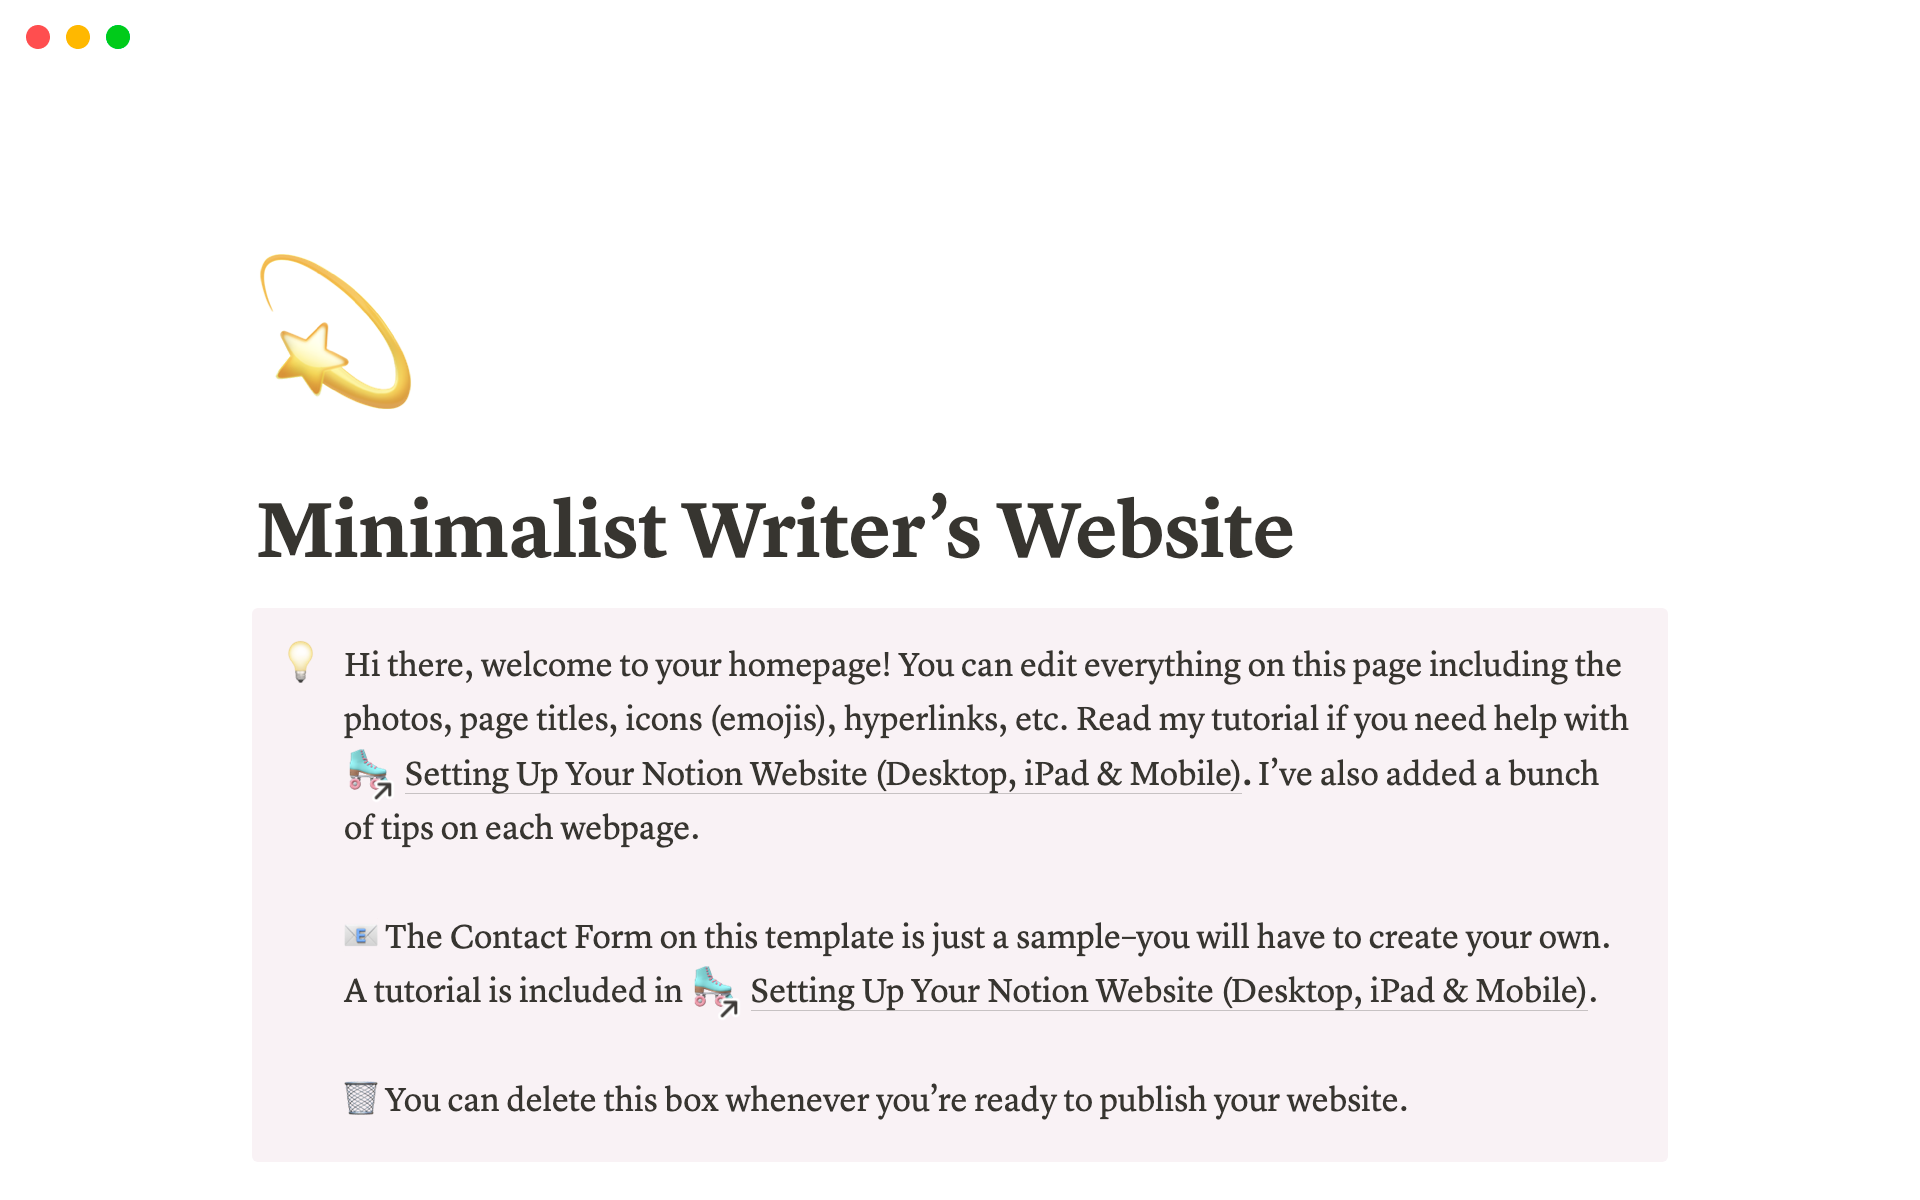 Uma prévia do modelo para Minimalist Writers Website